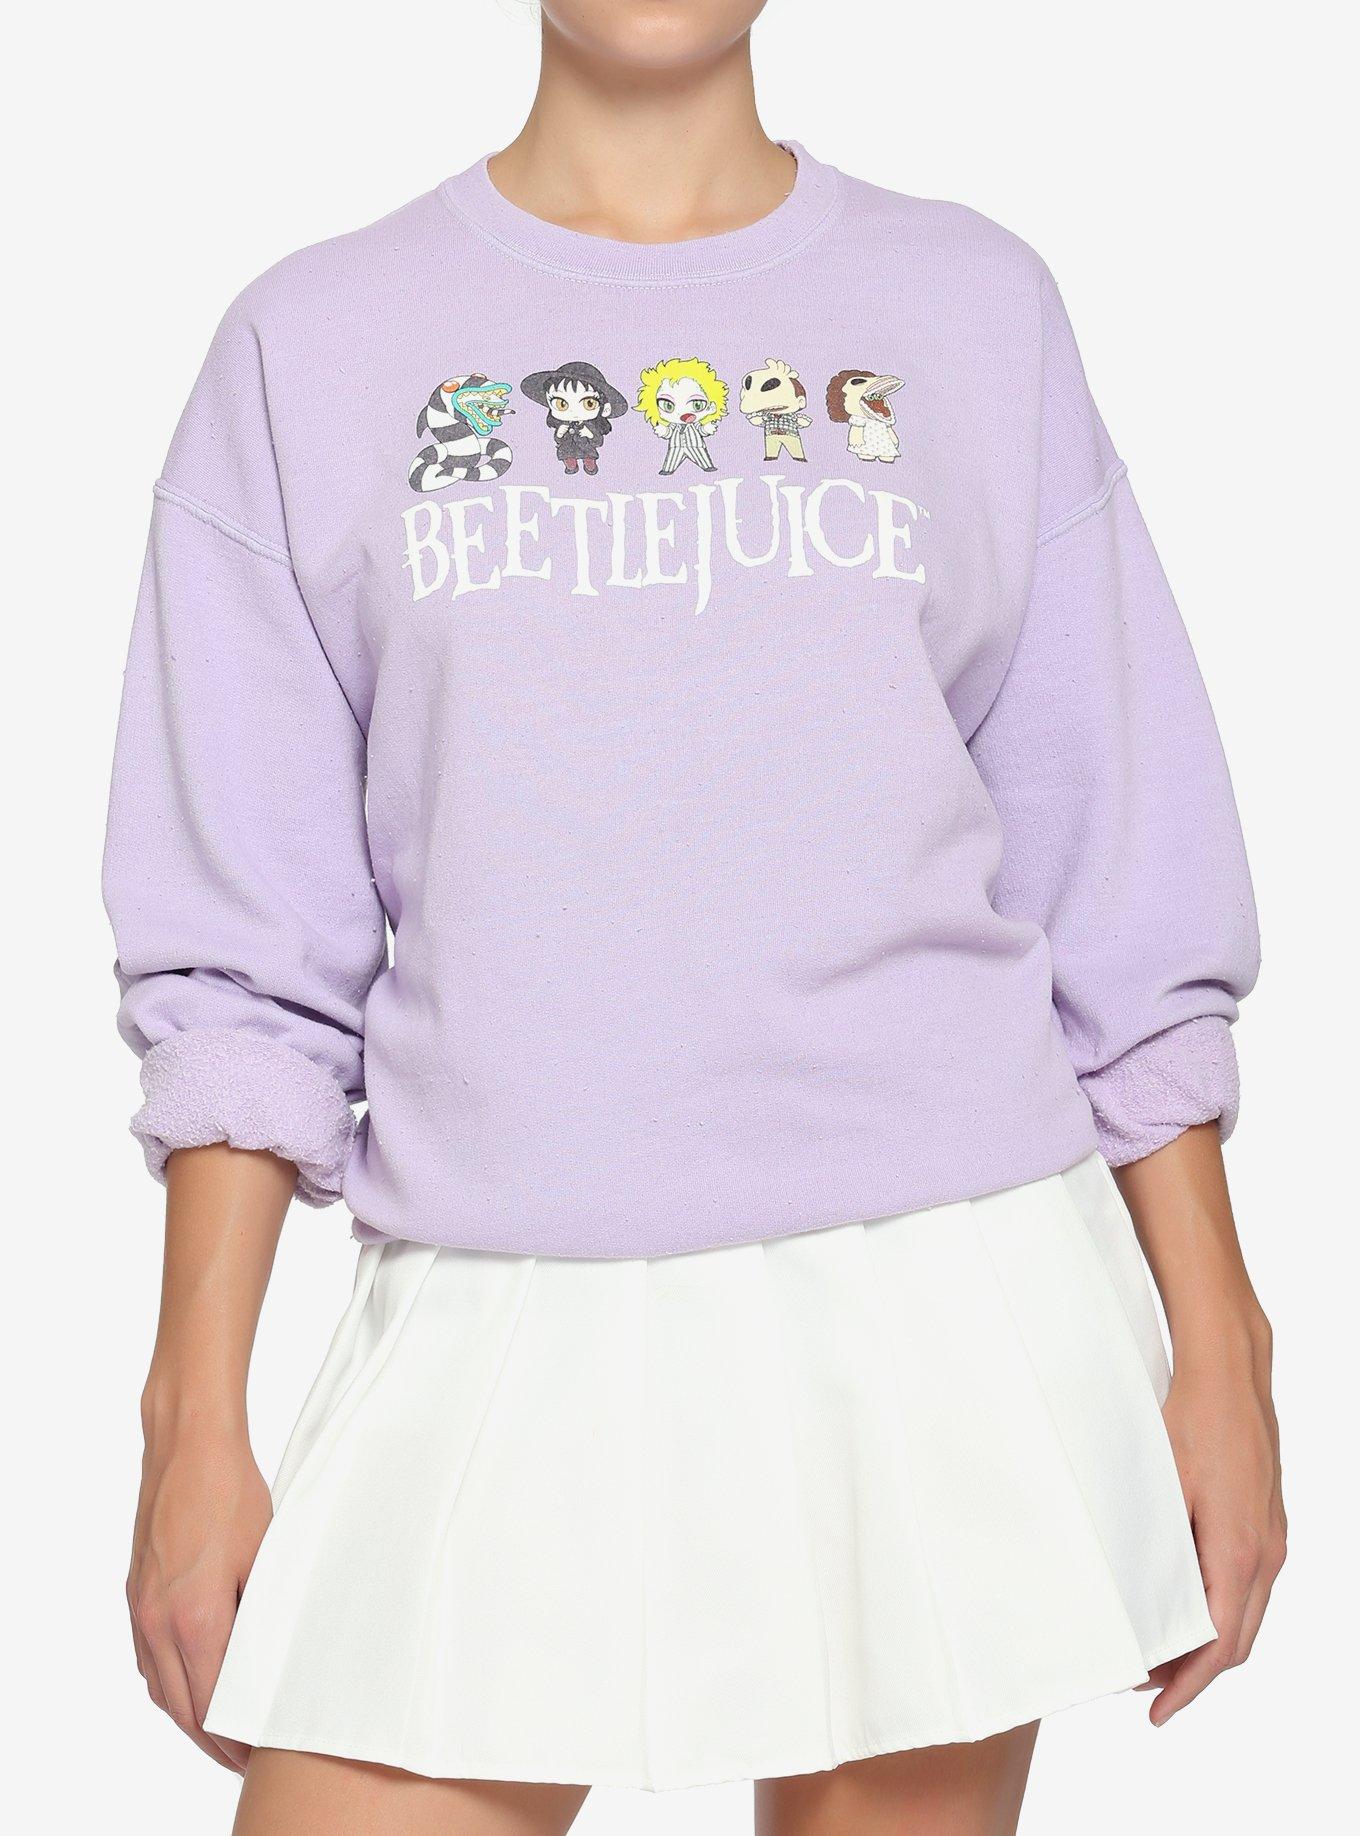 Beetlejuice Chibi Lavender Girls Sweatshirt, MULTI, hi-res